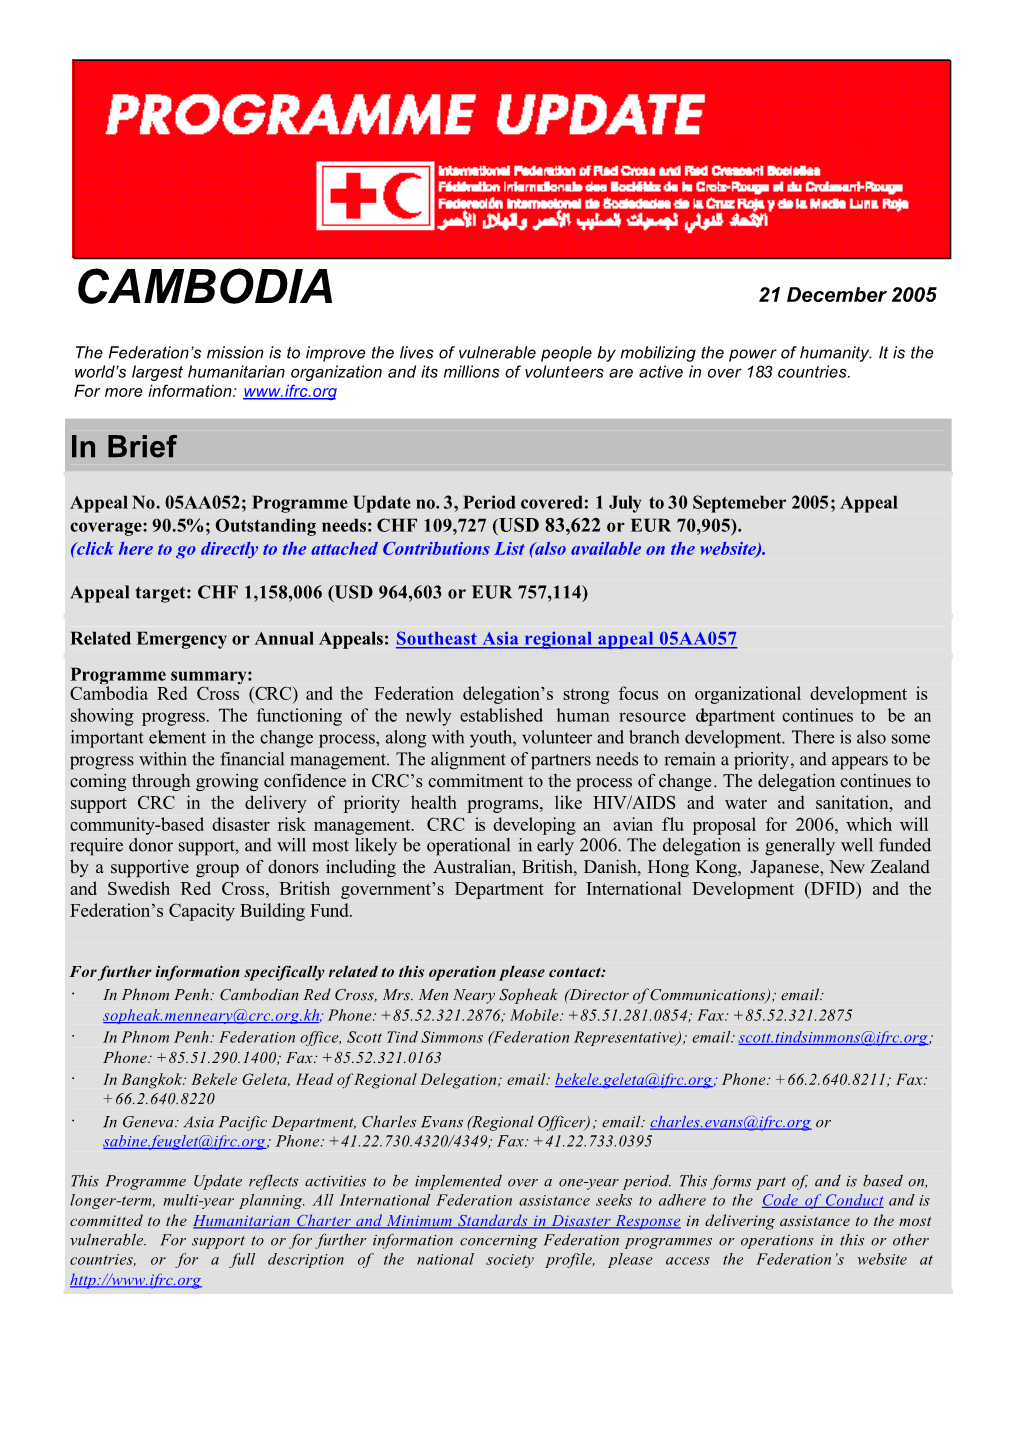 CAMBODIA 21 December 2005